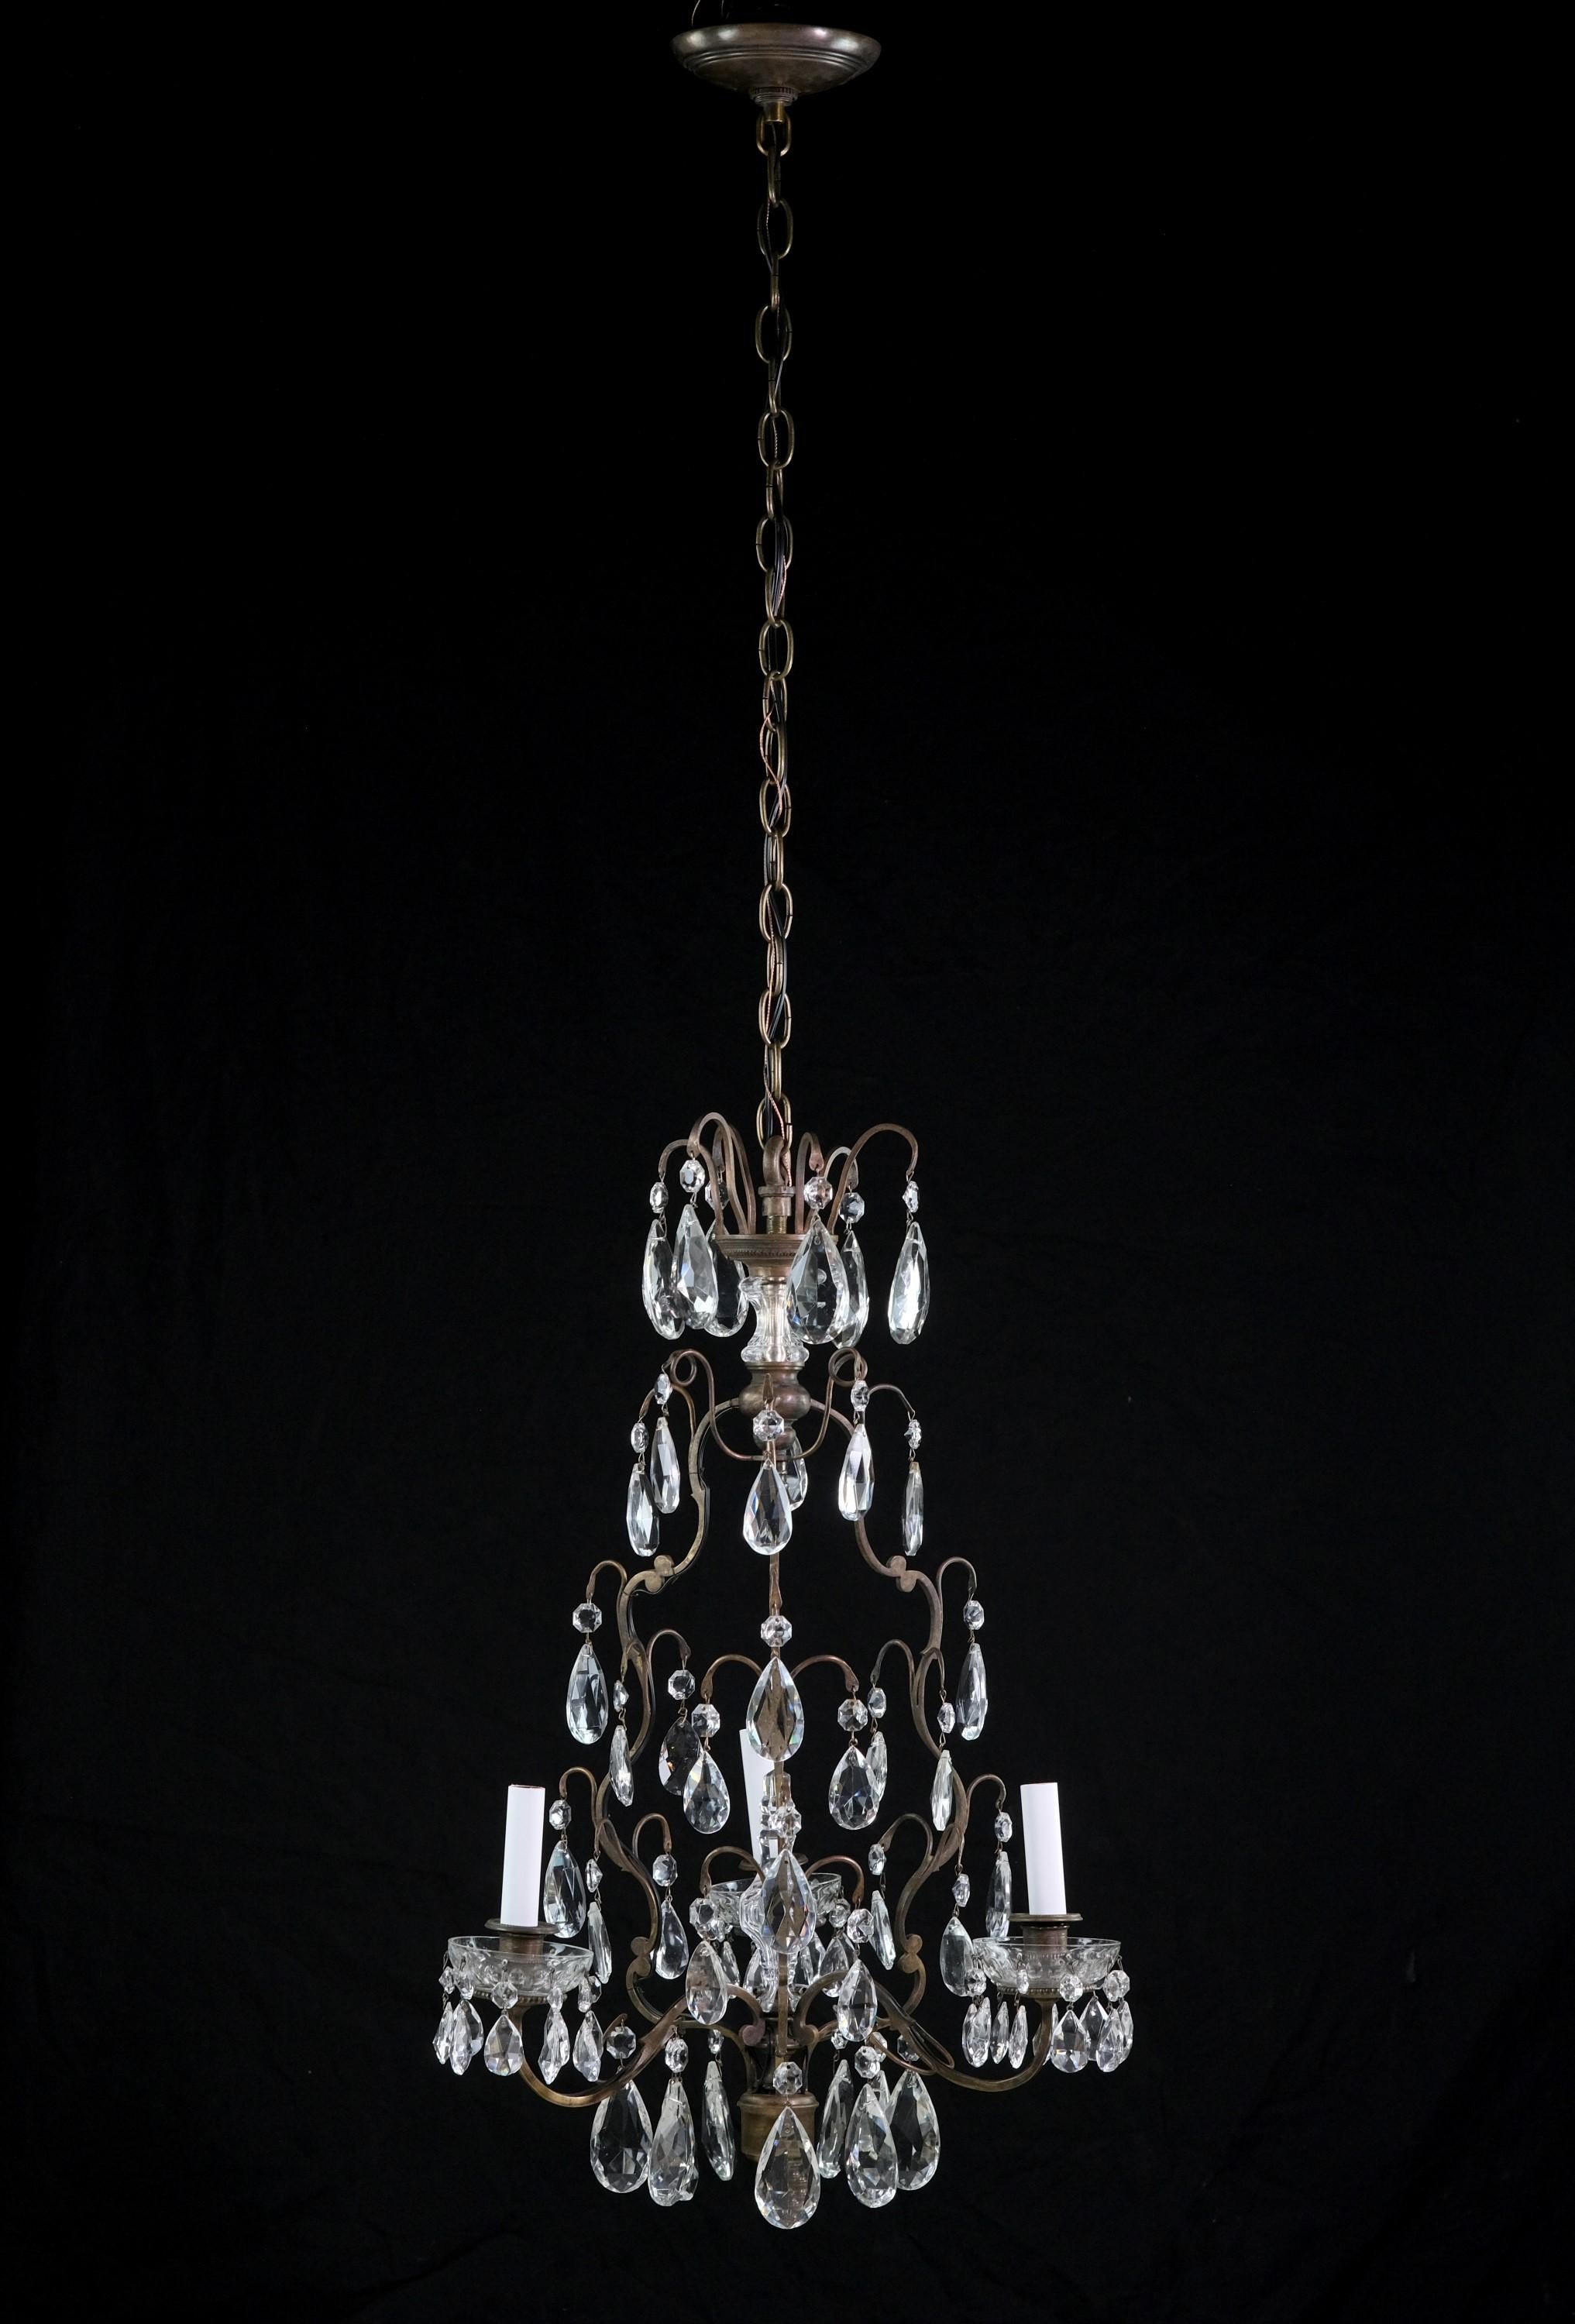 Cet élégant lustre français du début du 20e siècle présente une armature en bronze élaborée avec trois bras, chacun tenant un chandelier qui est orné d'une bobèche en cristal et de cristaux en forme de goutte d'eau. Ce lustre en cristal à plusieurs